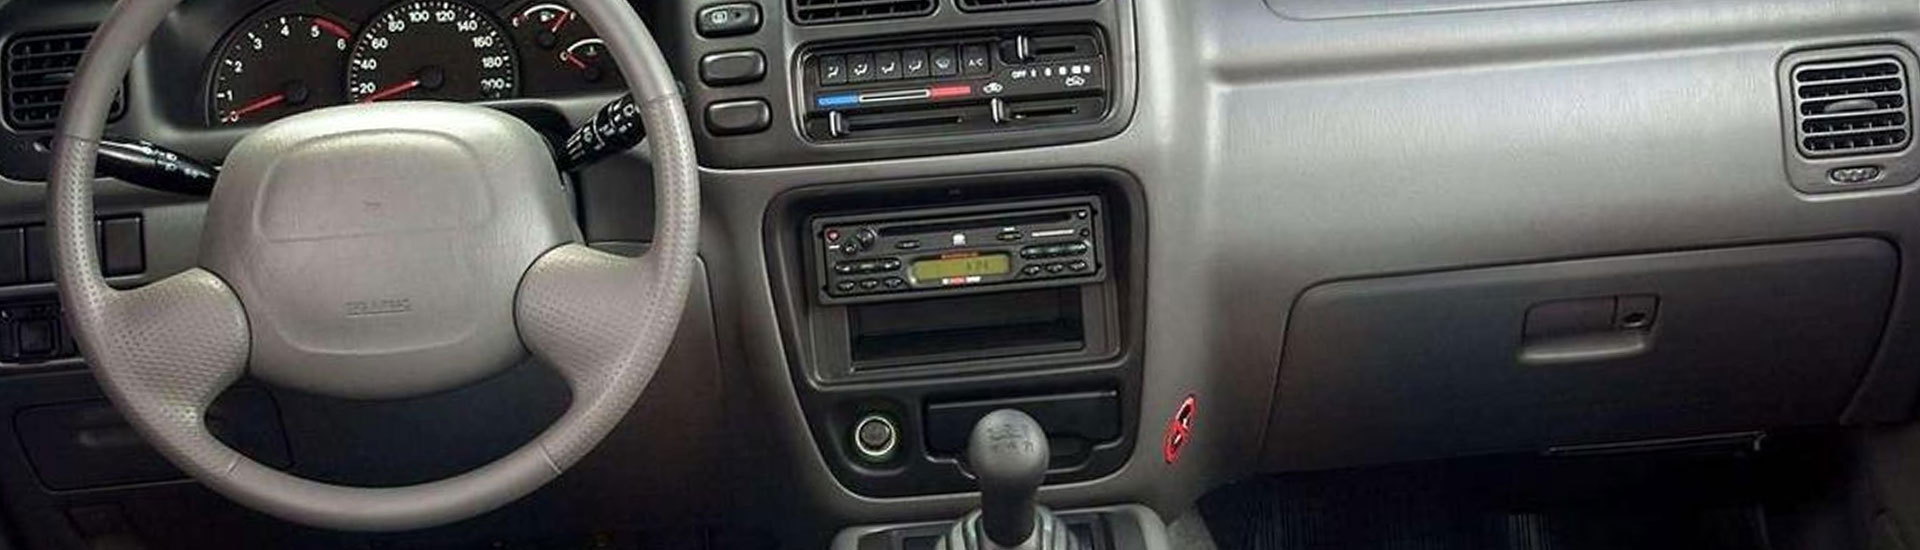 Chevrolet Tracker Dash Kits